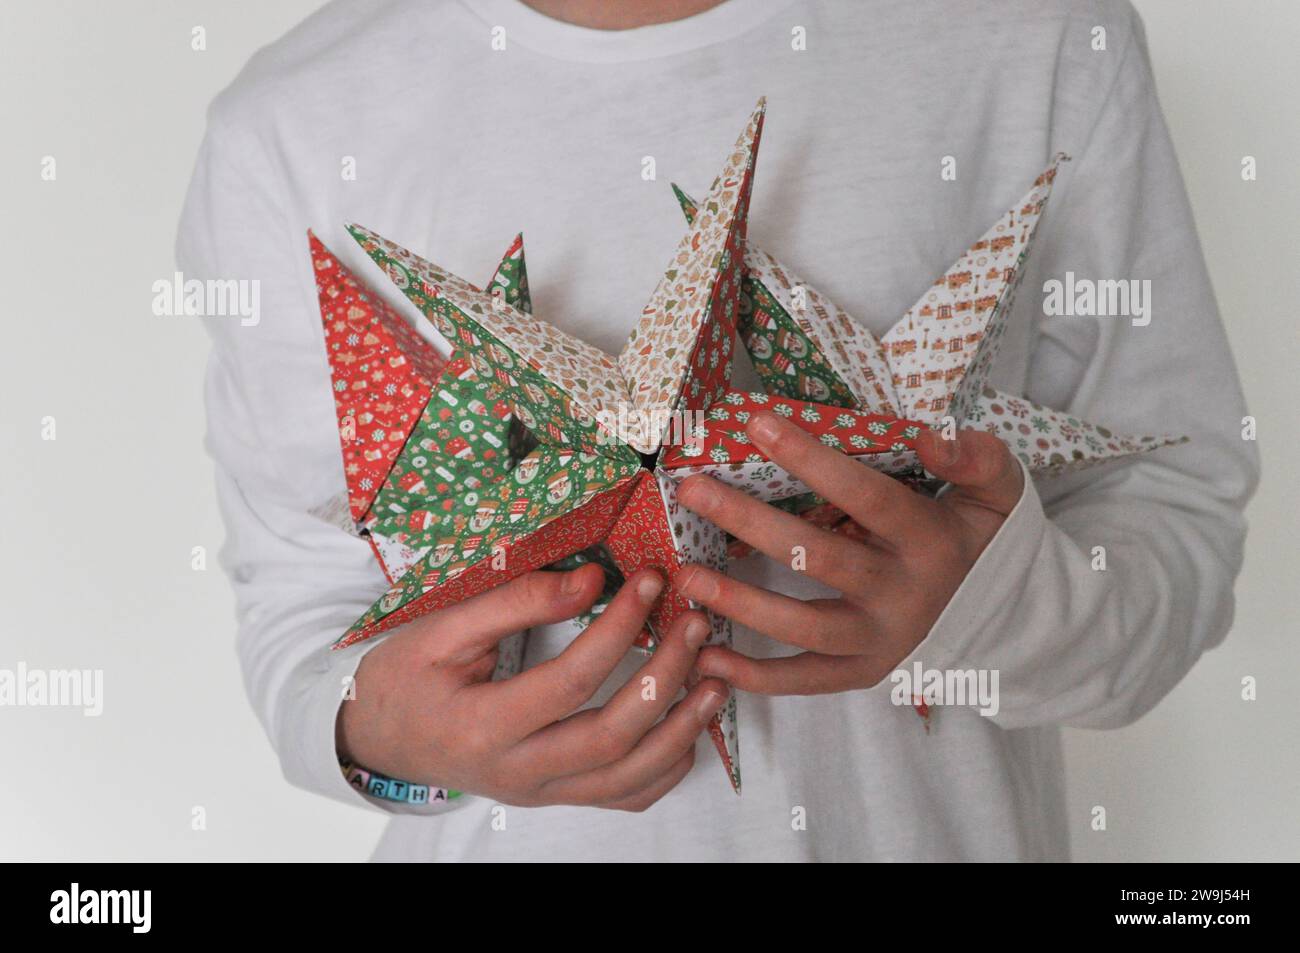 Une photo de studio d'un enfant tenant une collection d'étoiles d'origami faite de papier origami festif Banque D'Images